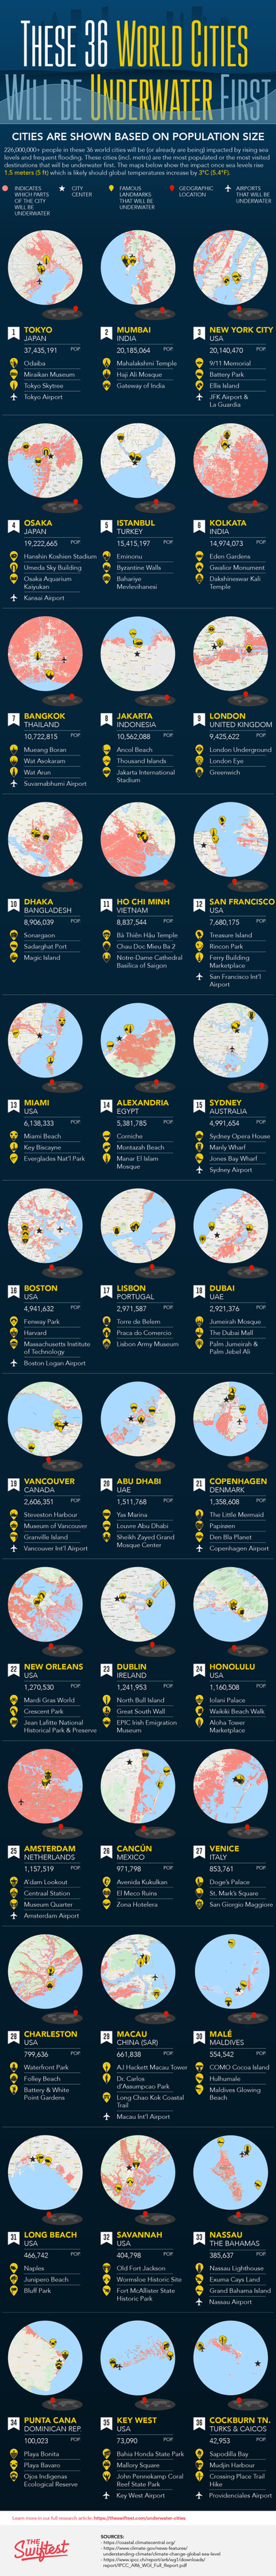 Las 36 ciudades del mundo con más papeletas de hundirse